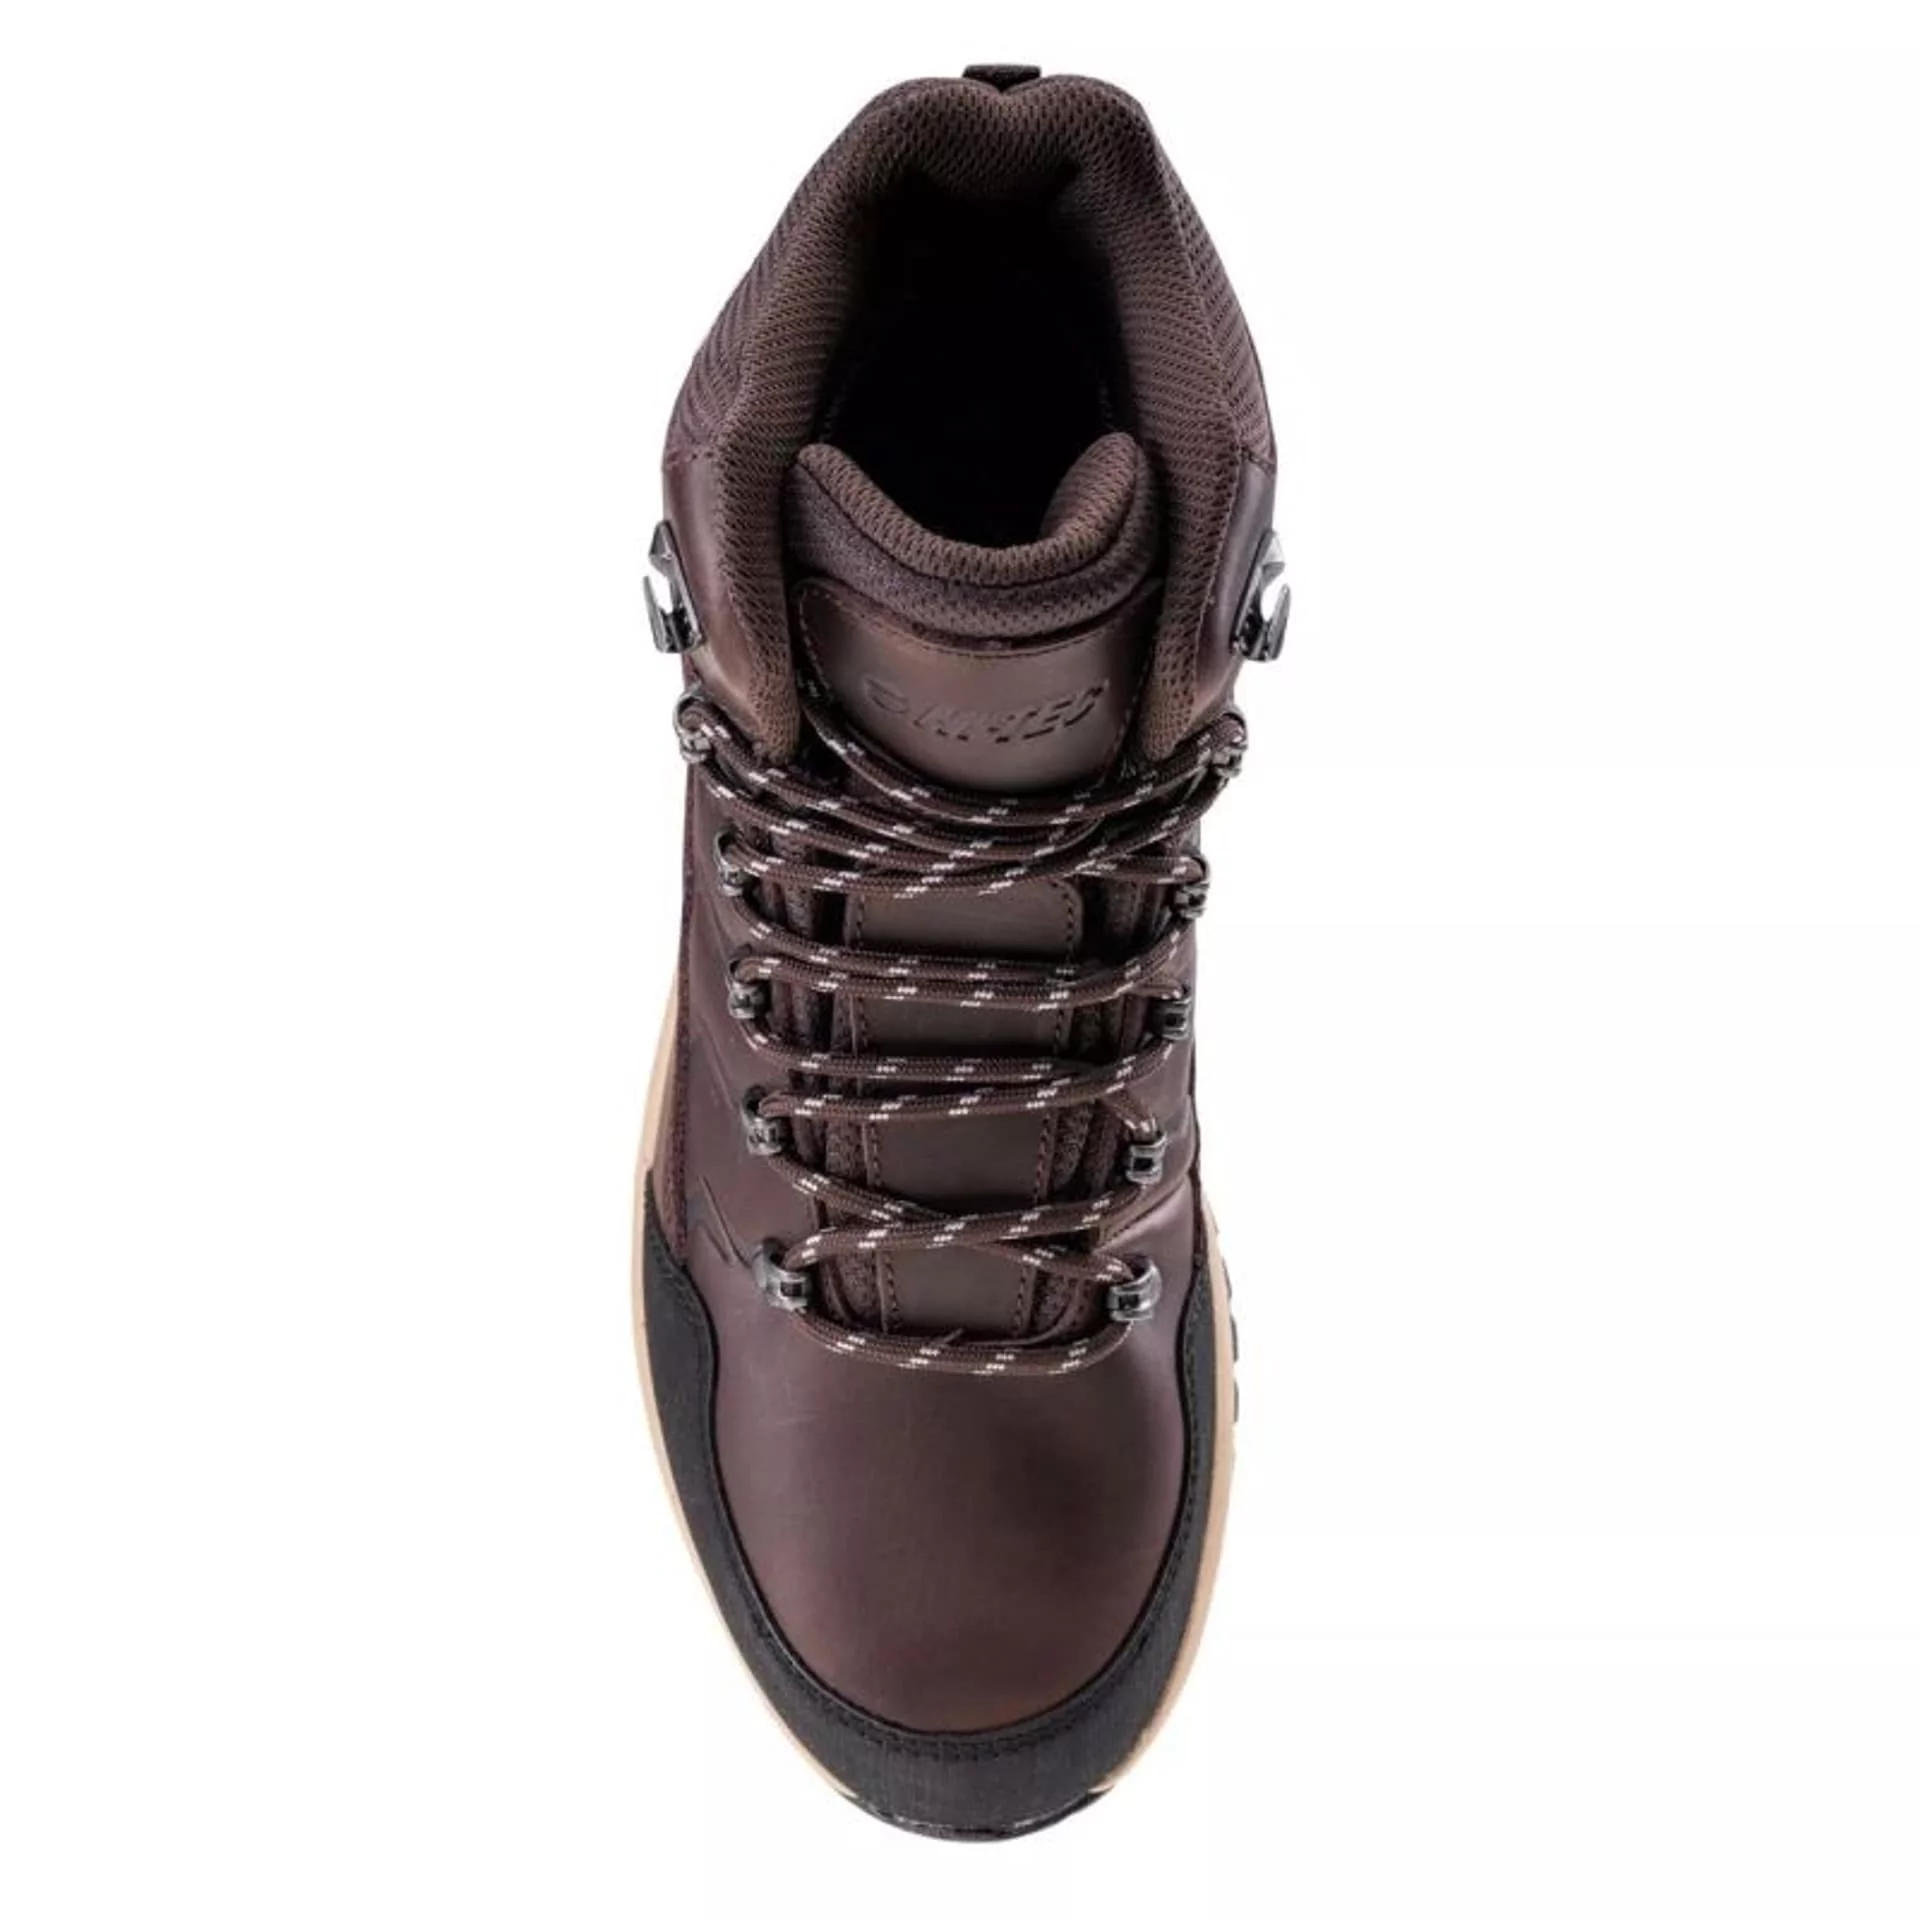 Męskie buty trekkingowe Hi-tec Leknes MID AG V brązowo-czarne rozmiar 44